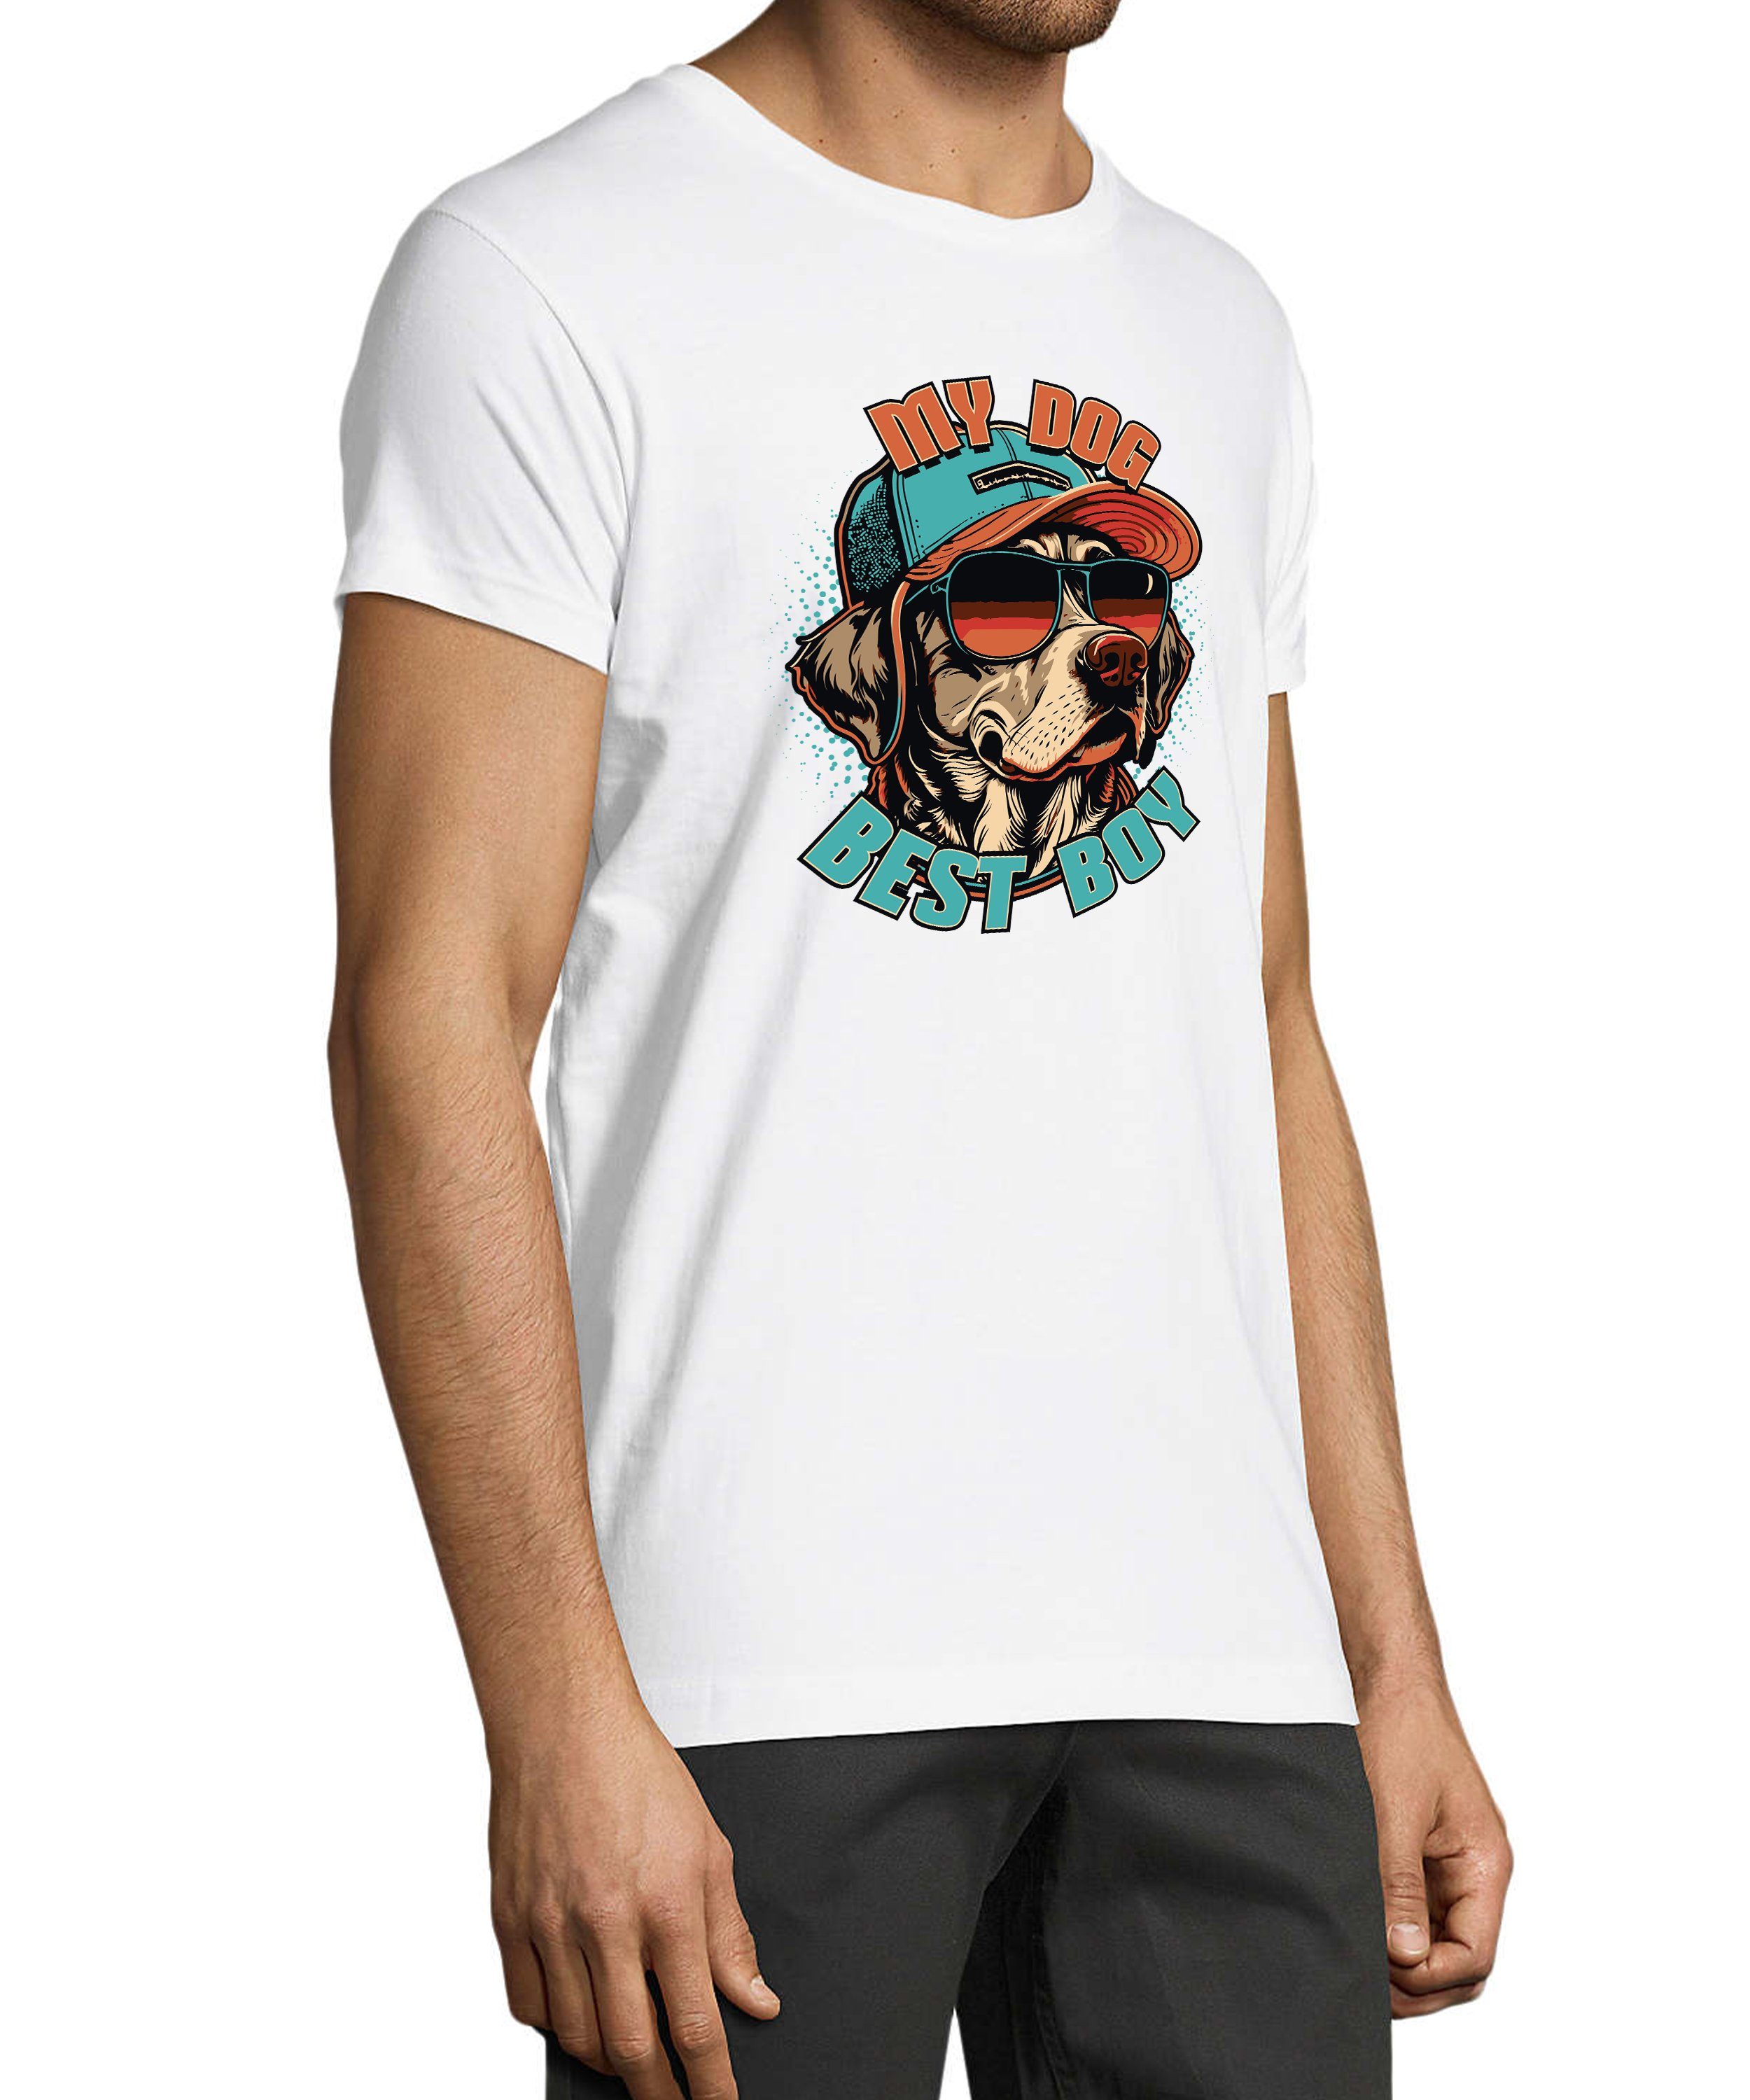 MyDesign24 T-Shirt Shirt Cap mit Hund Regular Hunde weiss - Print Baumwollshirt i225 Fit, mit Aufdruck Sonnenbrille Cooler und Herren